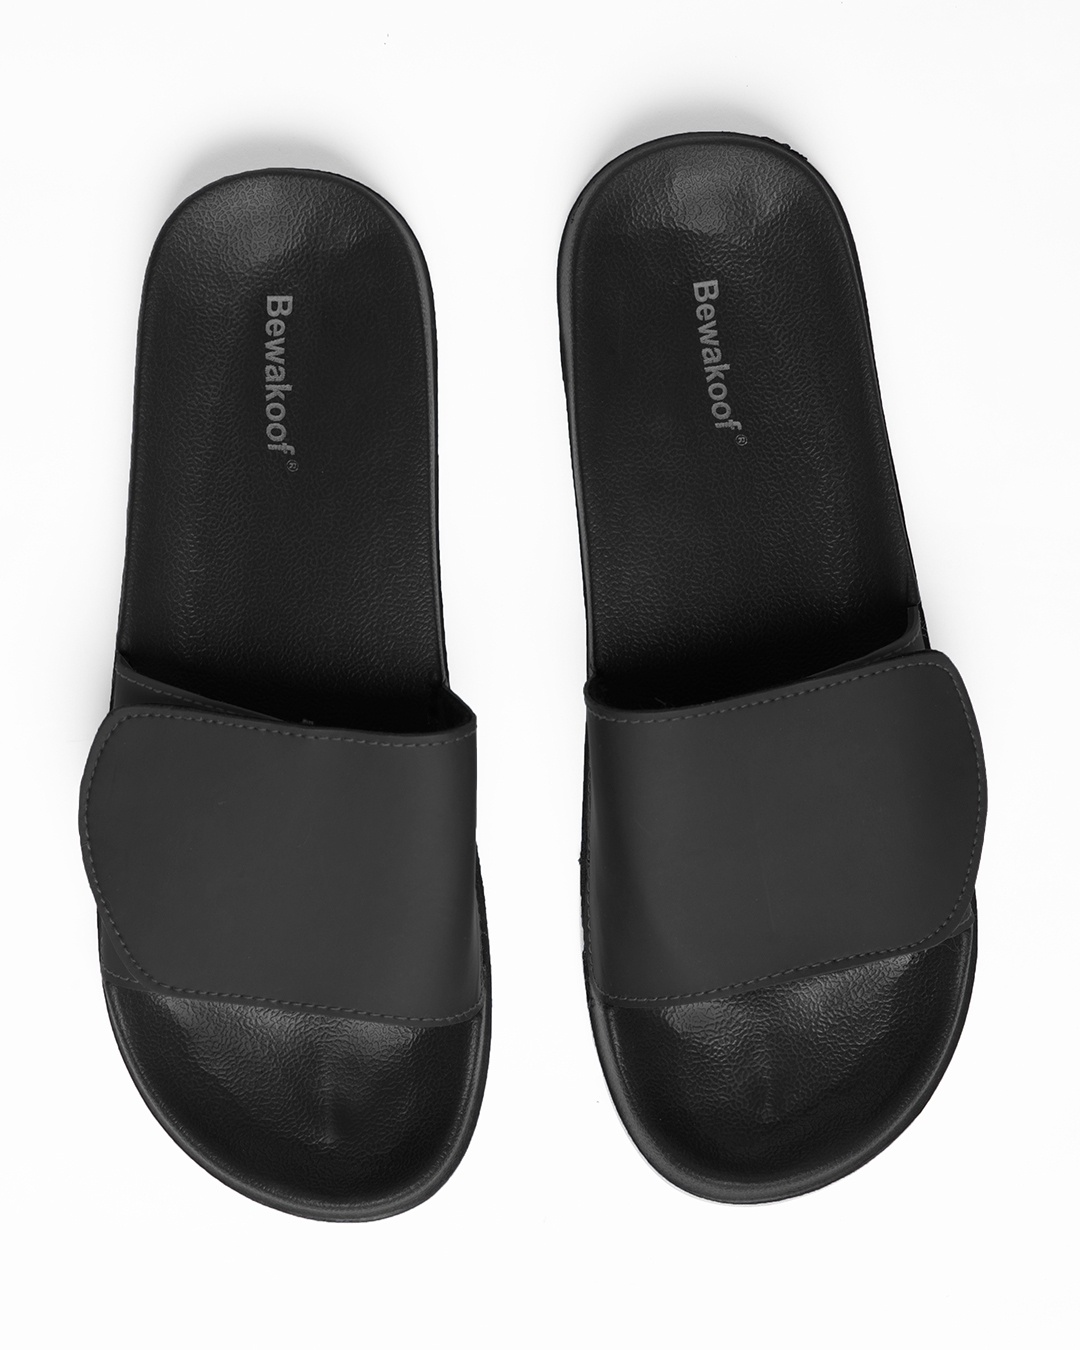 Buy Men's Black Adjustable Velcro Sliders Online in India at Bewakoof